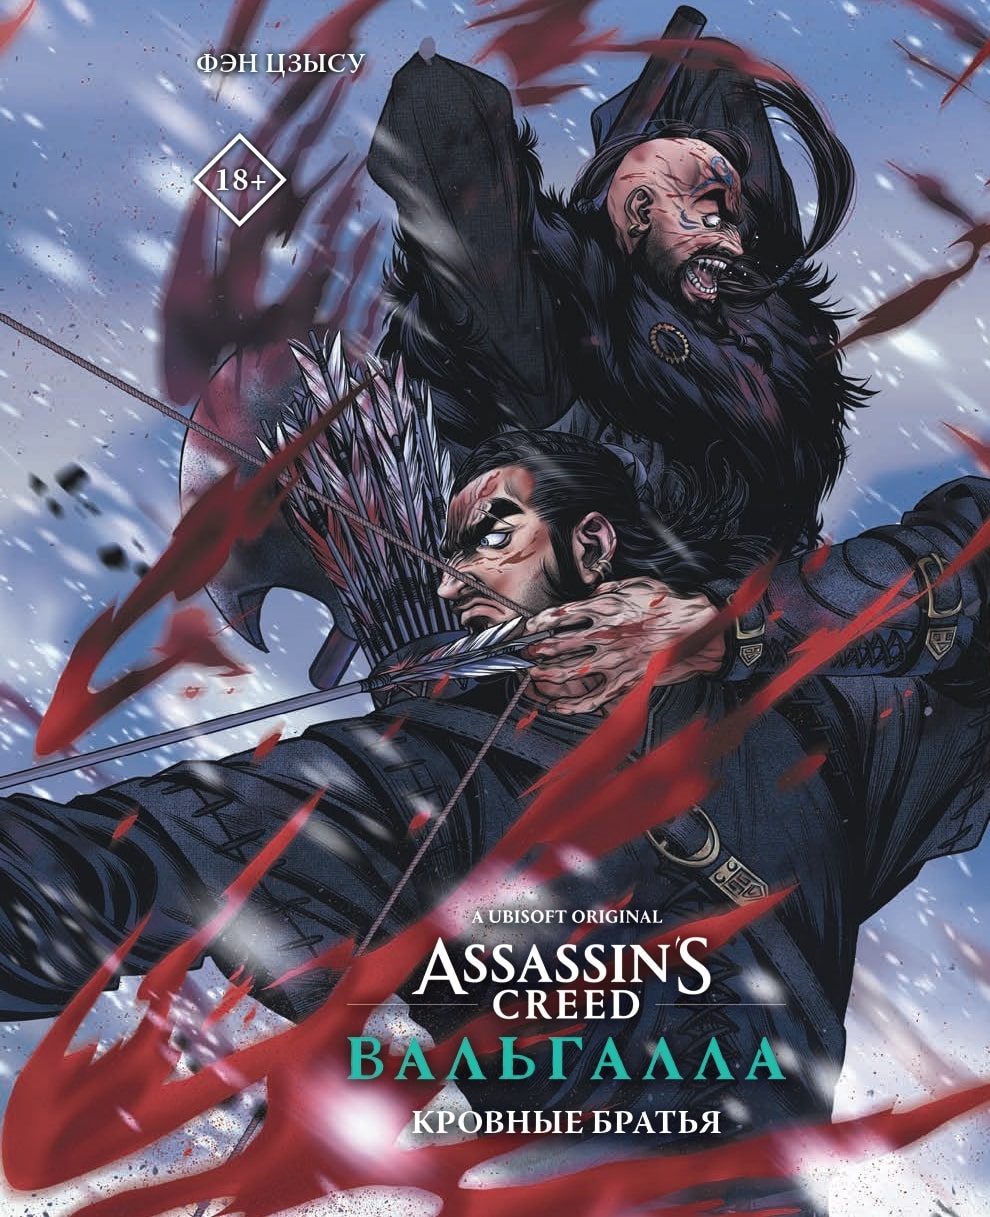 манга assassin s creed вальгалла кровные братья puzzle набор Фэн Цзысу Assassins Creed: Вальгалла. Кровные братья